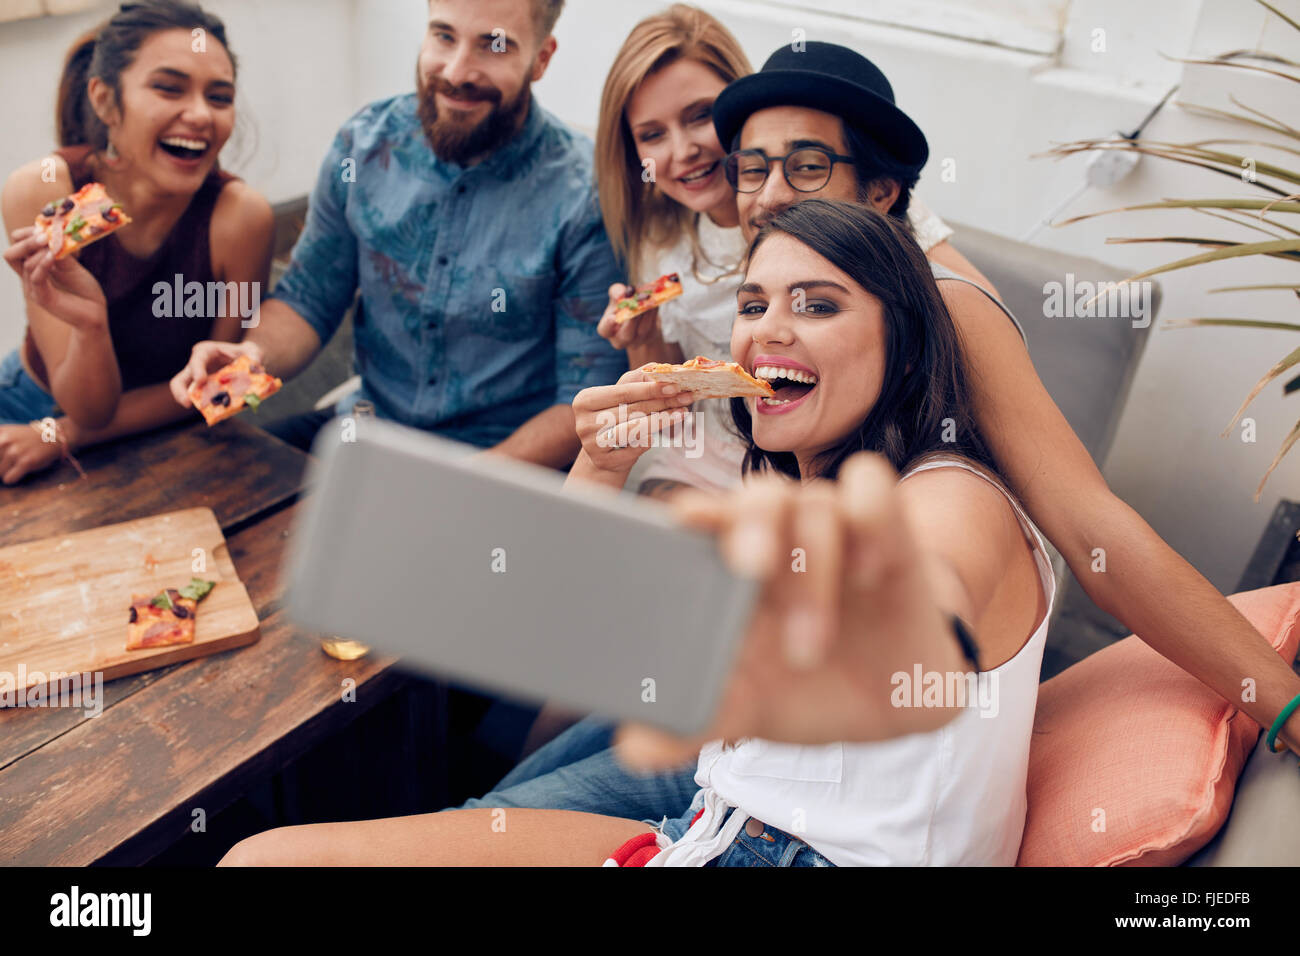 Grupo multirracial de jóvenes tomando un selfie mientras come pizza. Joven comiendo pizza sus amigos sentados durante Foto de stock